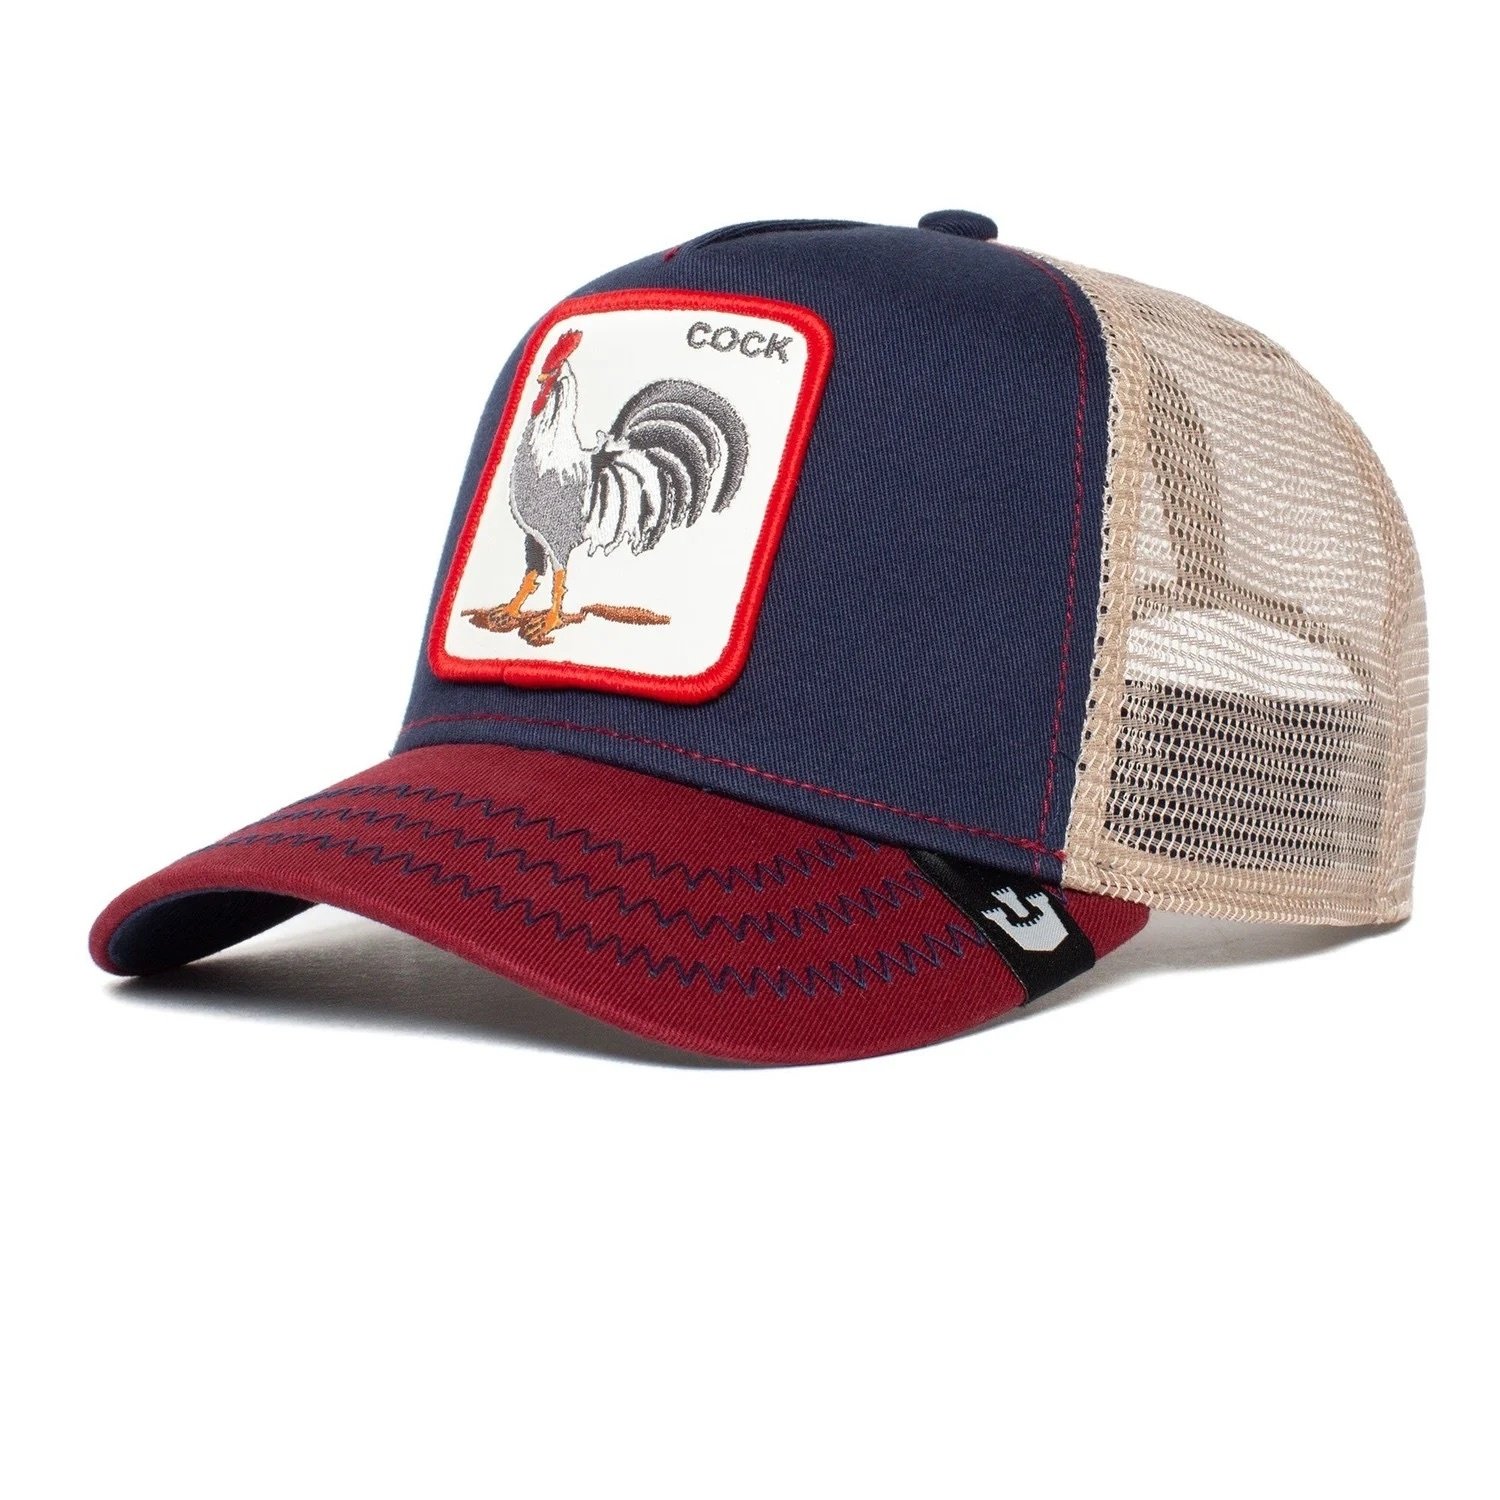 trucker hat vs baseball cap